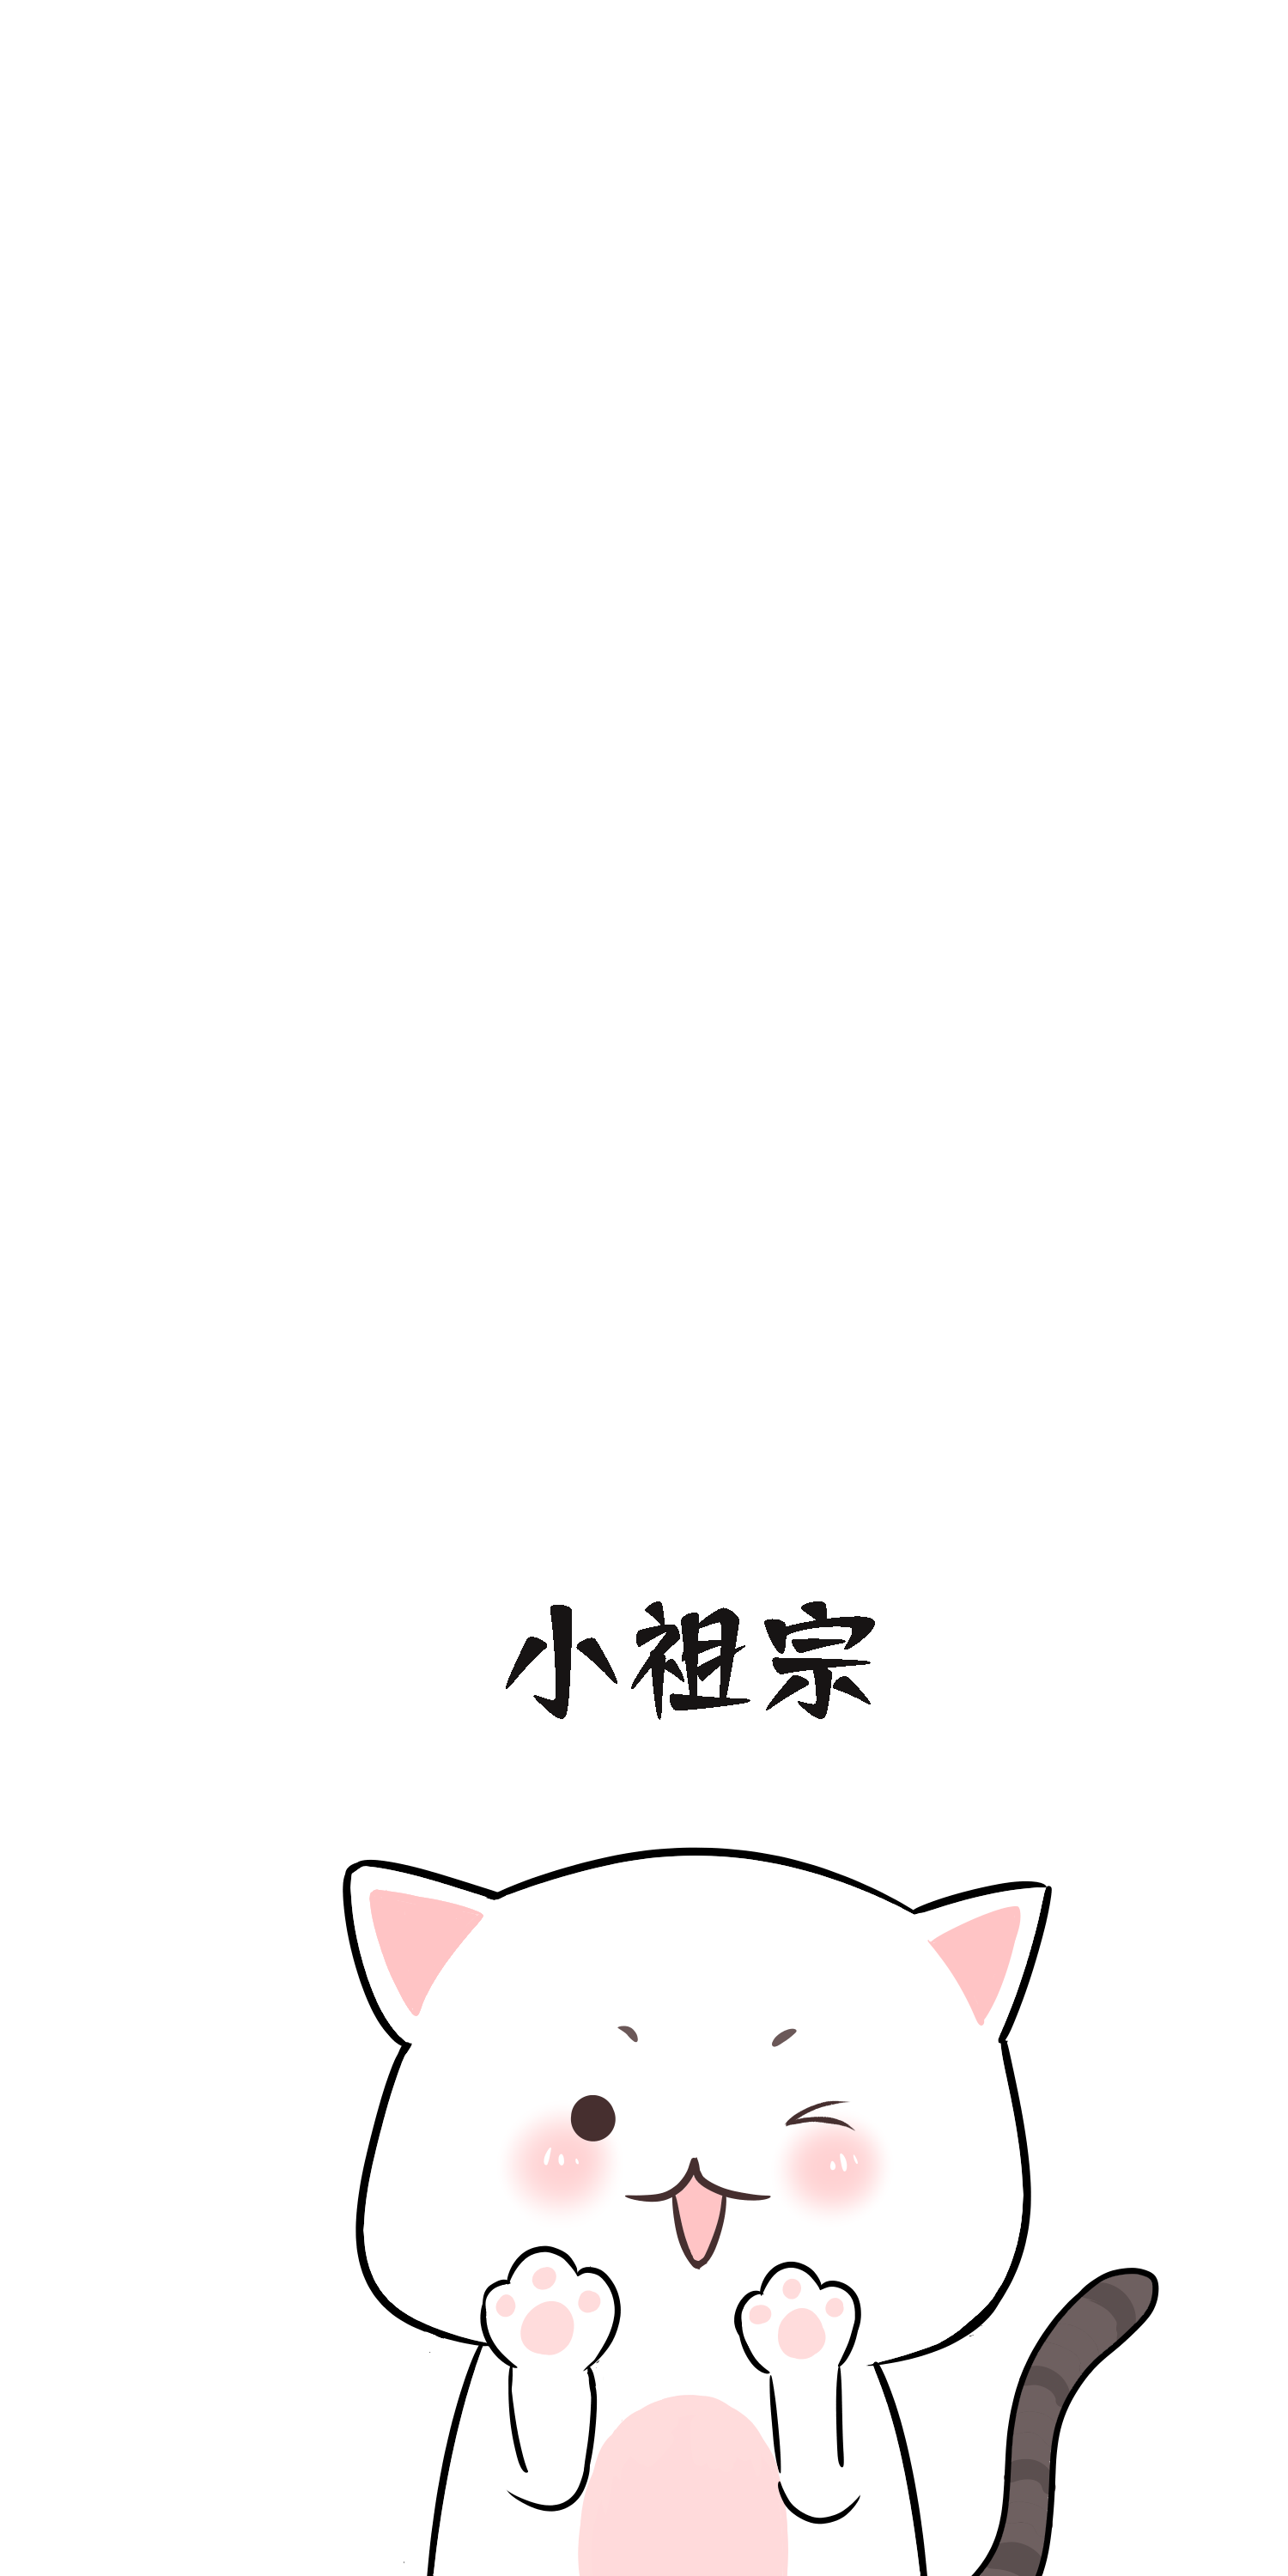 小祖宗 可爱 情侣 猫咪 趣味 萌萌哒 原创意 手机壁纸 哭着也要宠完